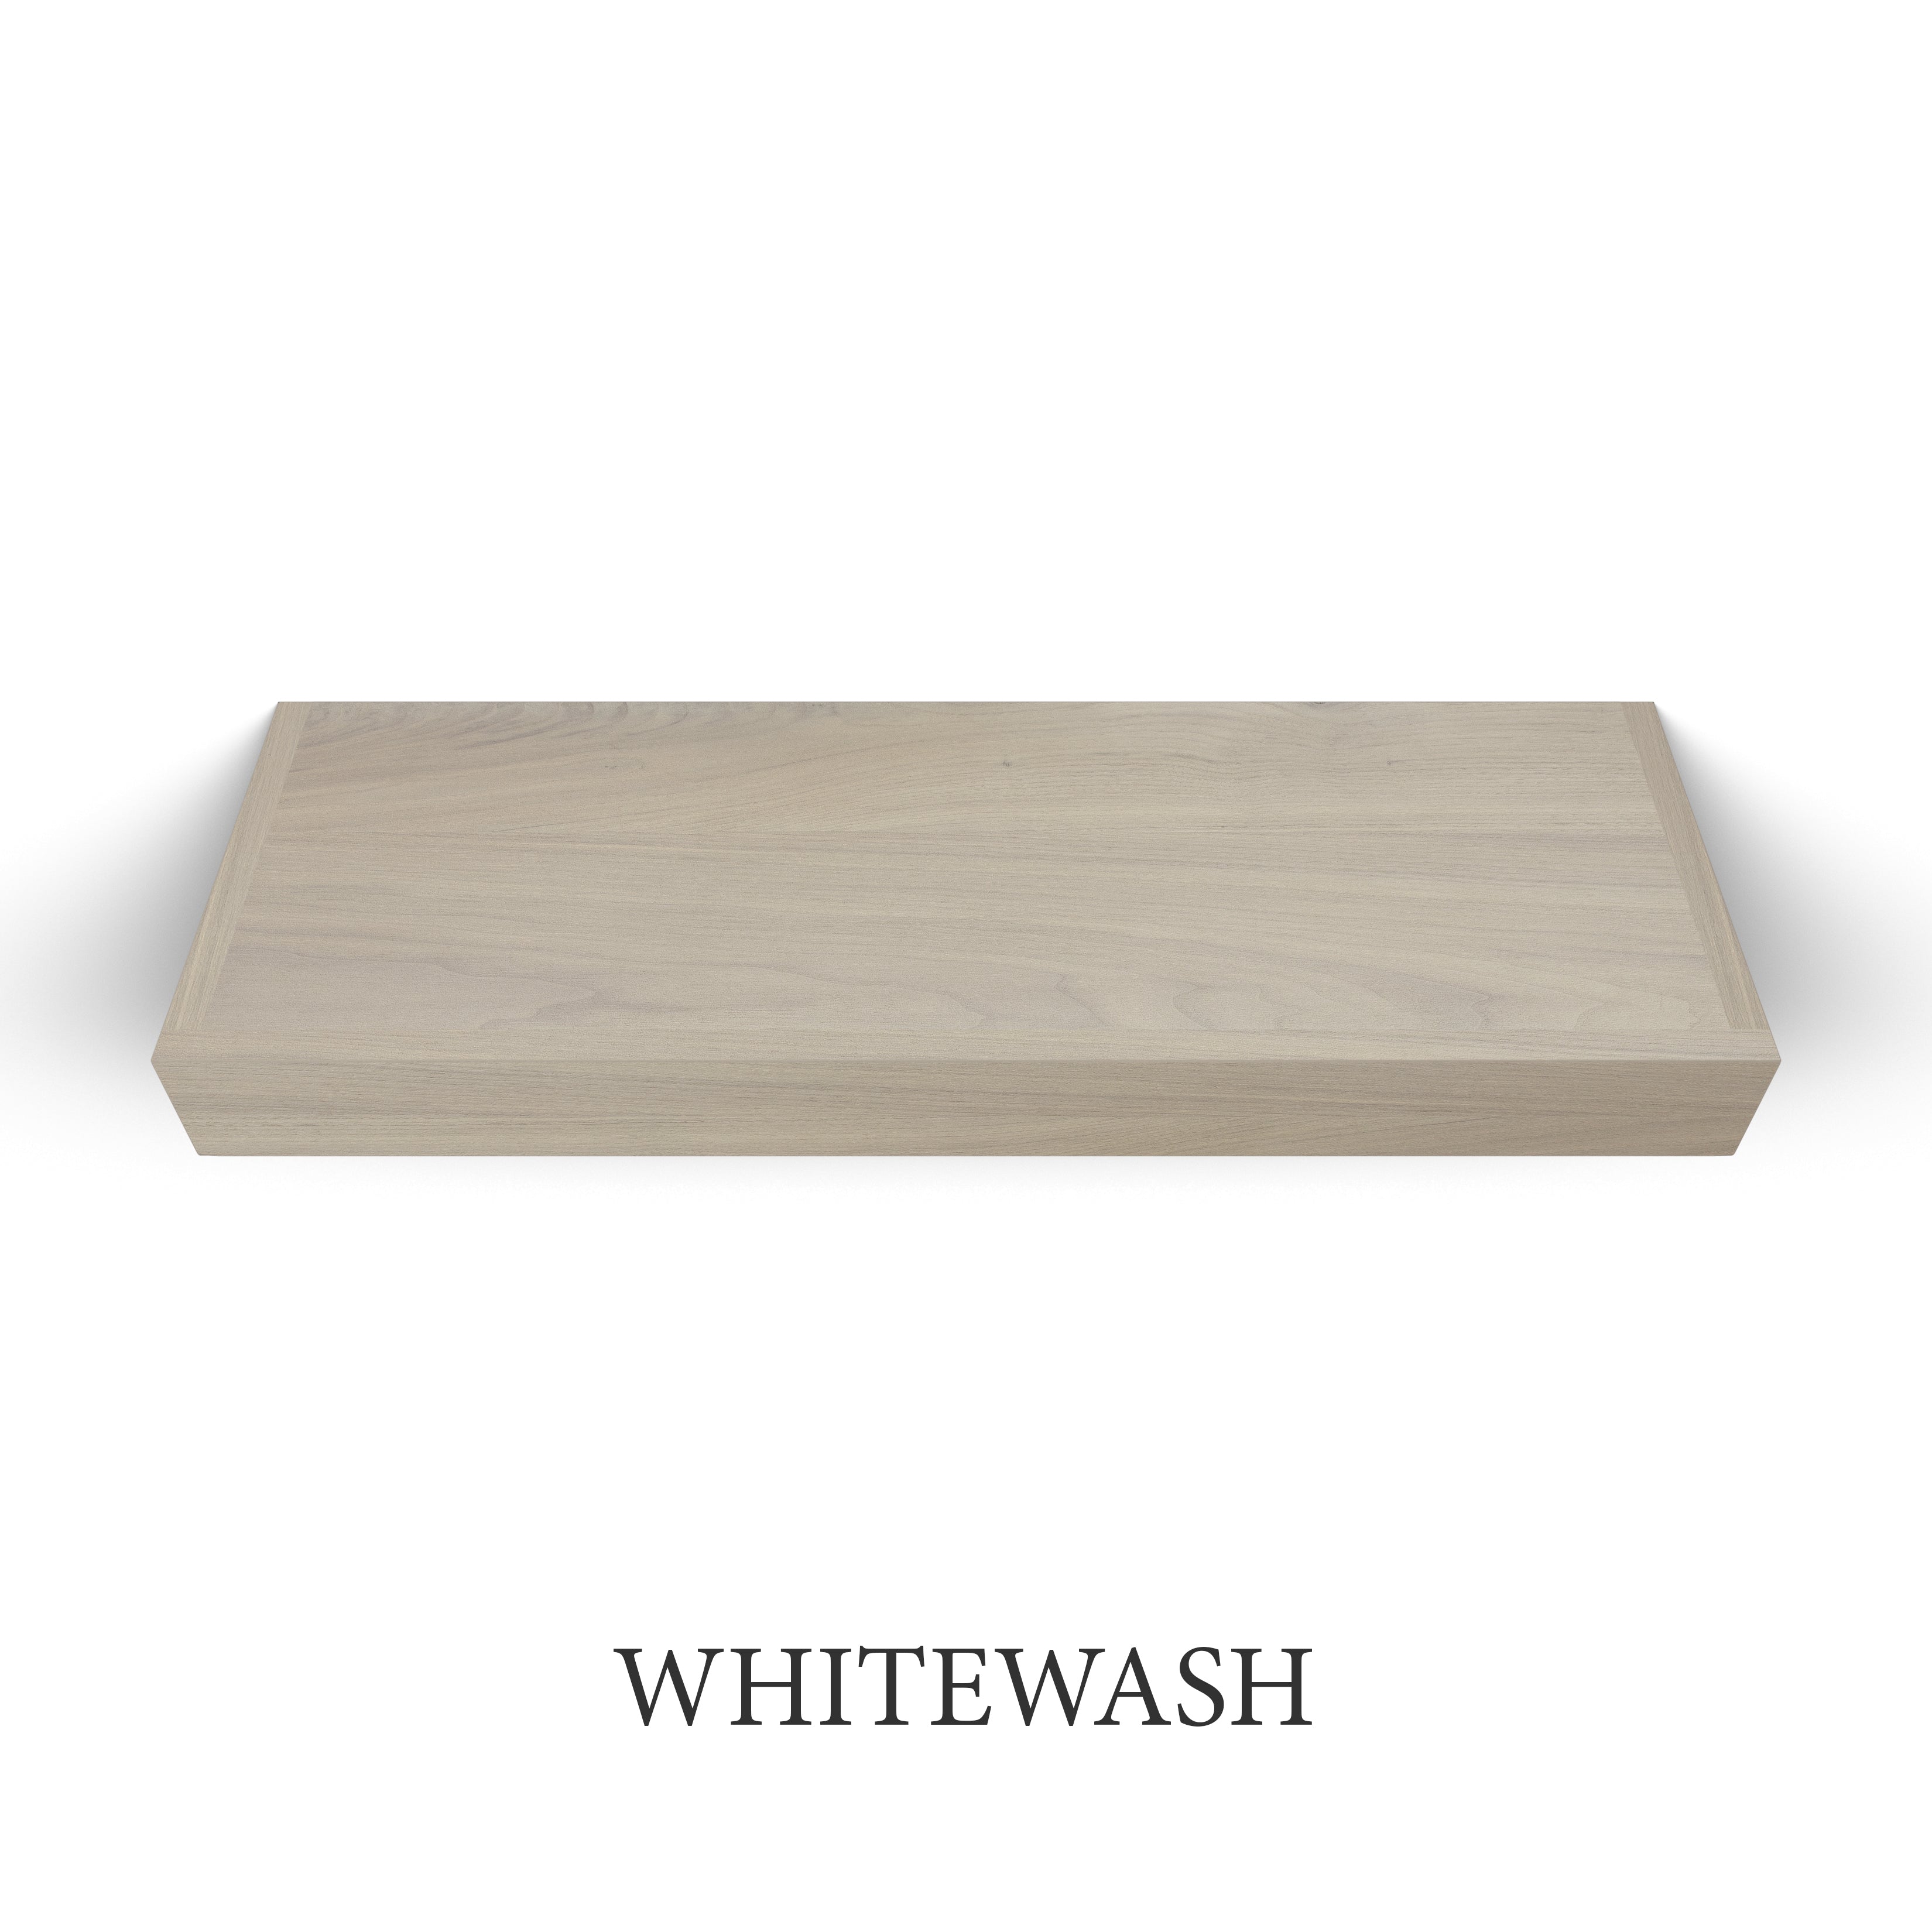 whitewash Walnut 3 Inch Thick LED Lighted Floating Shelf - Battery